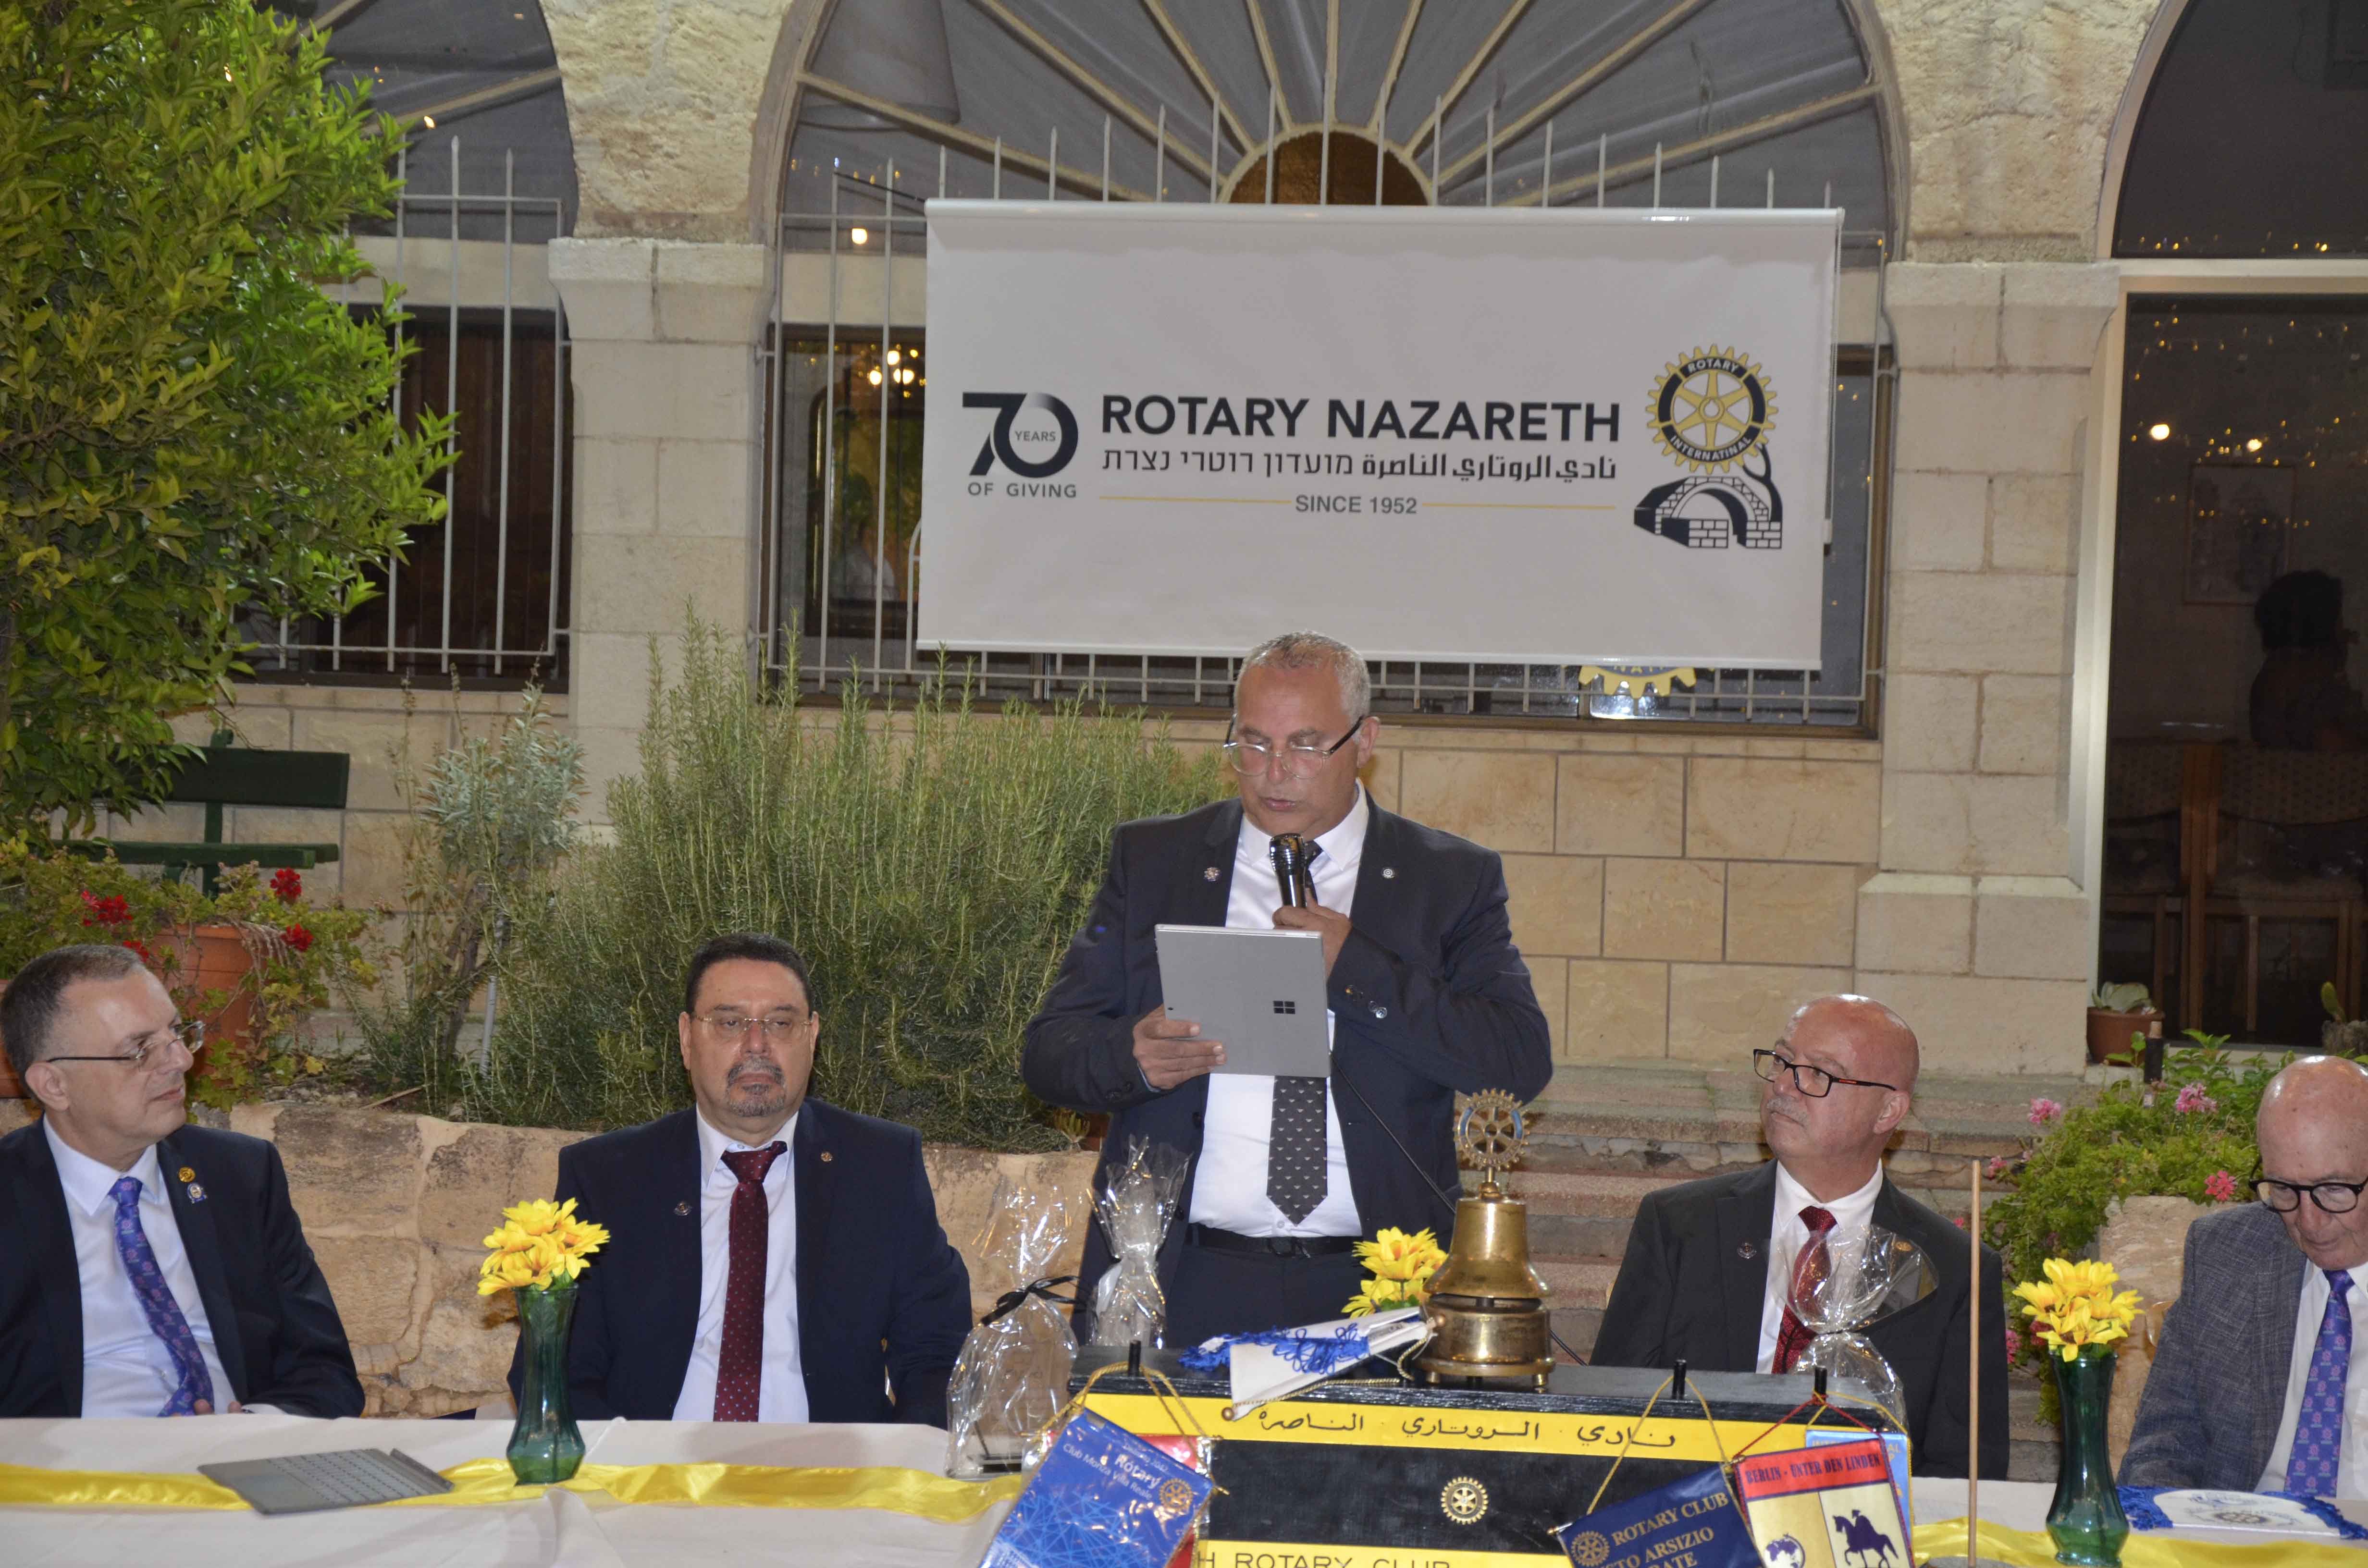 سبعون عاما من العطاء: نادي روتاري الناصرة يفتتح سنته السبعين ويعلن عن مؤتمر اقتصادي-3